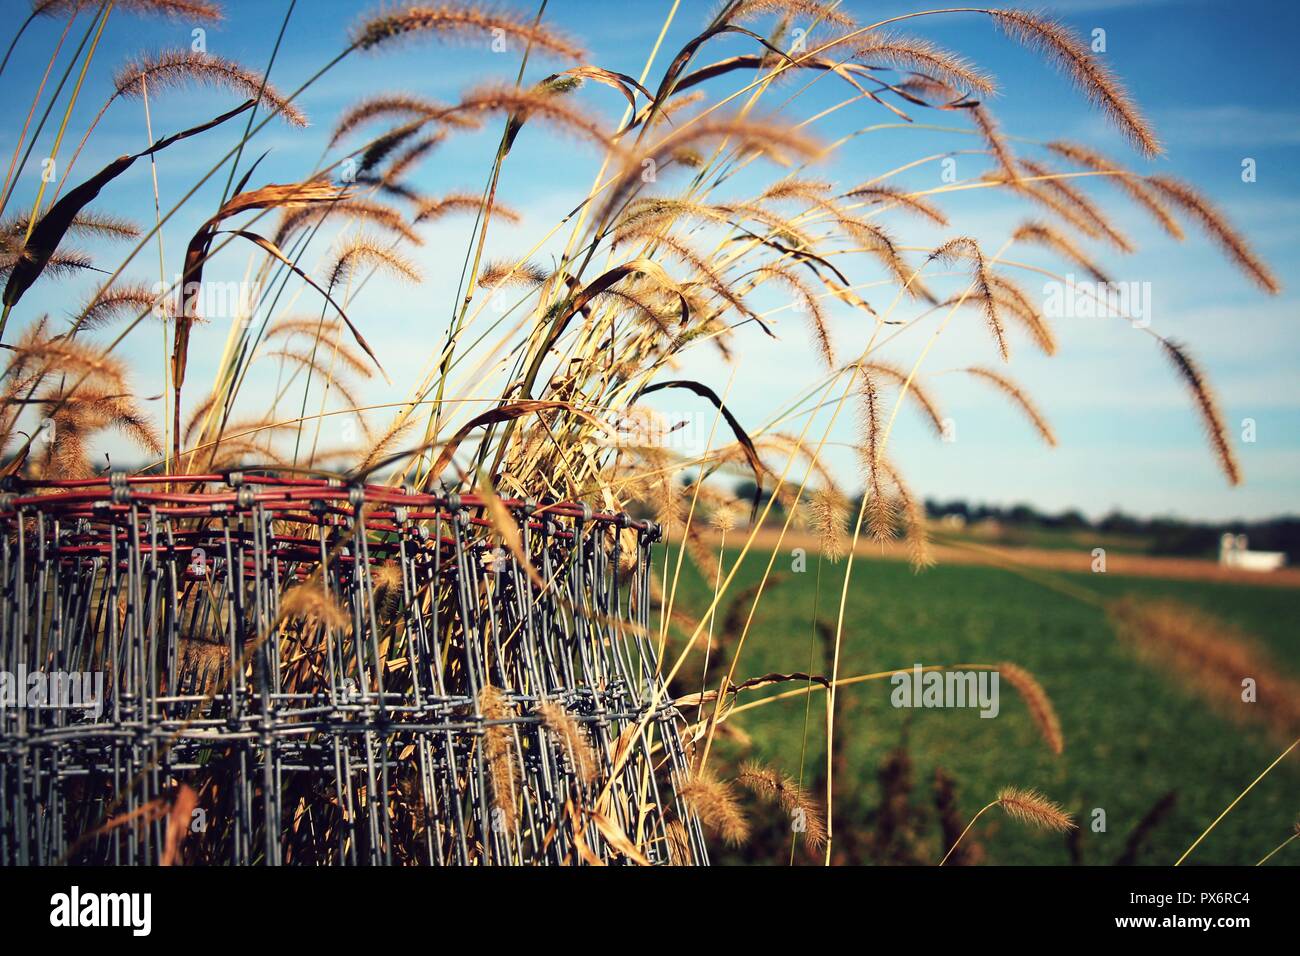 Les mauvaises herbes qui poussent hors de la clôture avec une médaille bleu ciel et champ dans l'arrière-plan d'un paysage du comté de Lancaster Amish. Banque D'Images